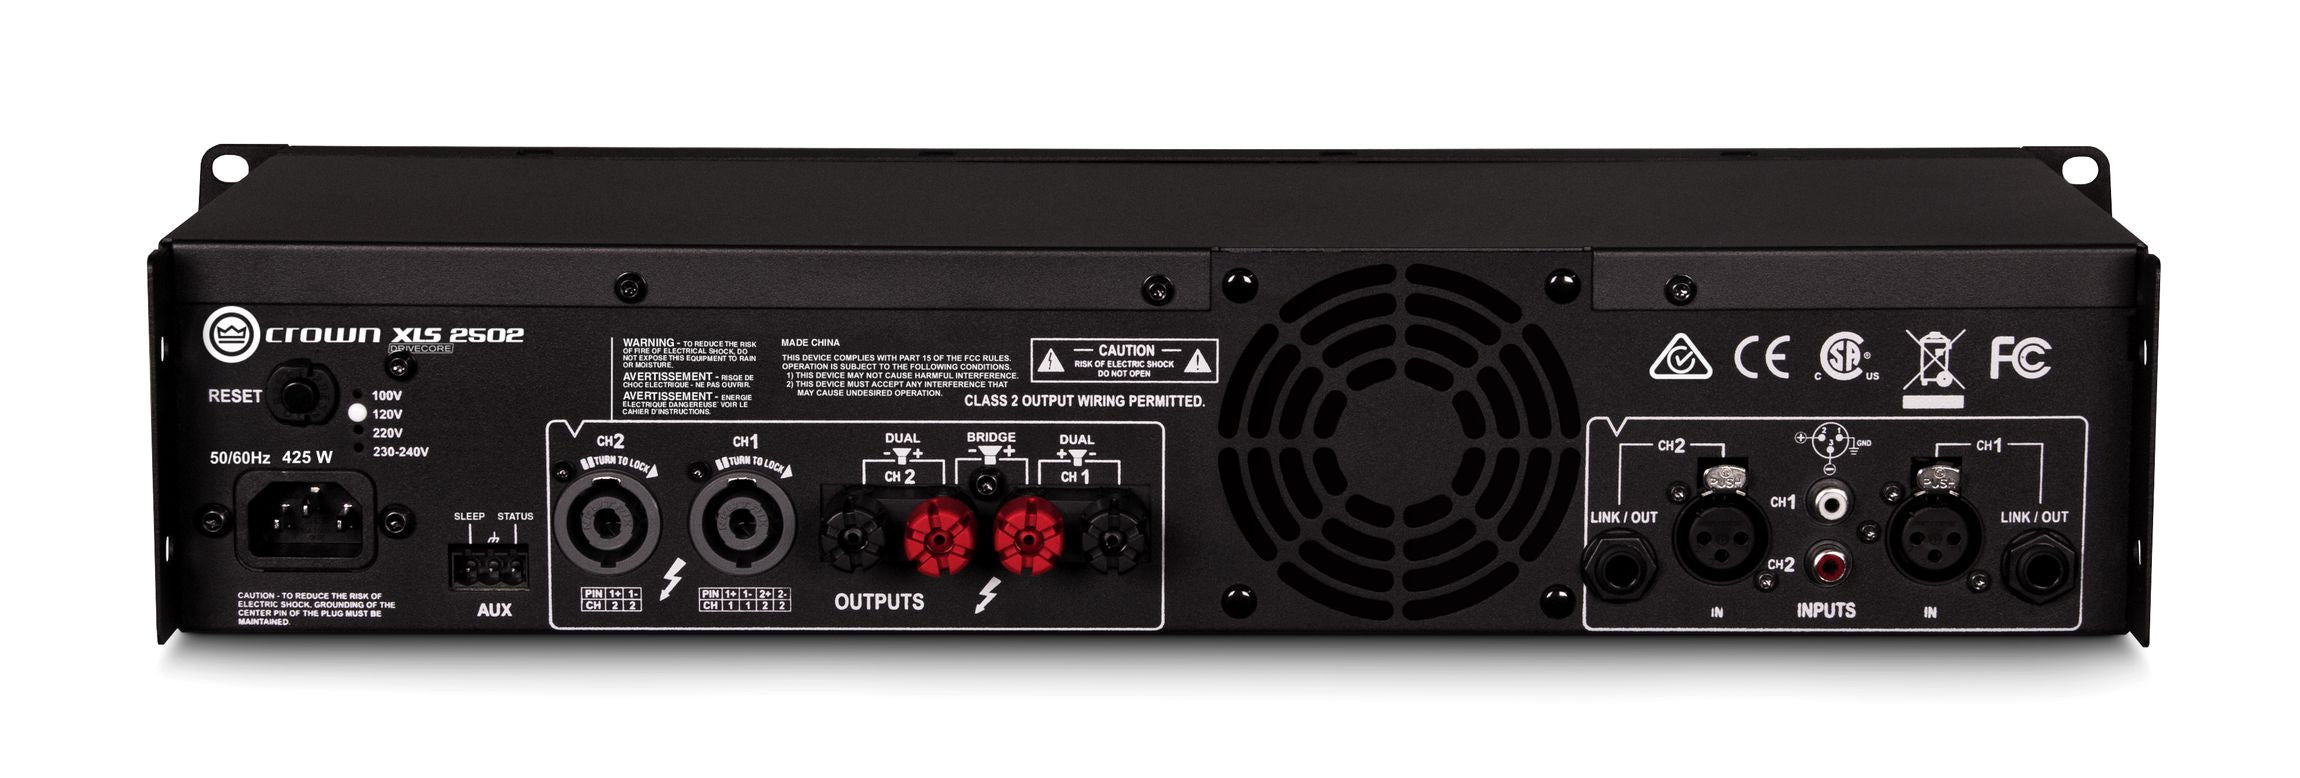 Crown Audio XLS2502 Drivecore - Power Amps - Professional Audio Design, Inc